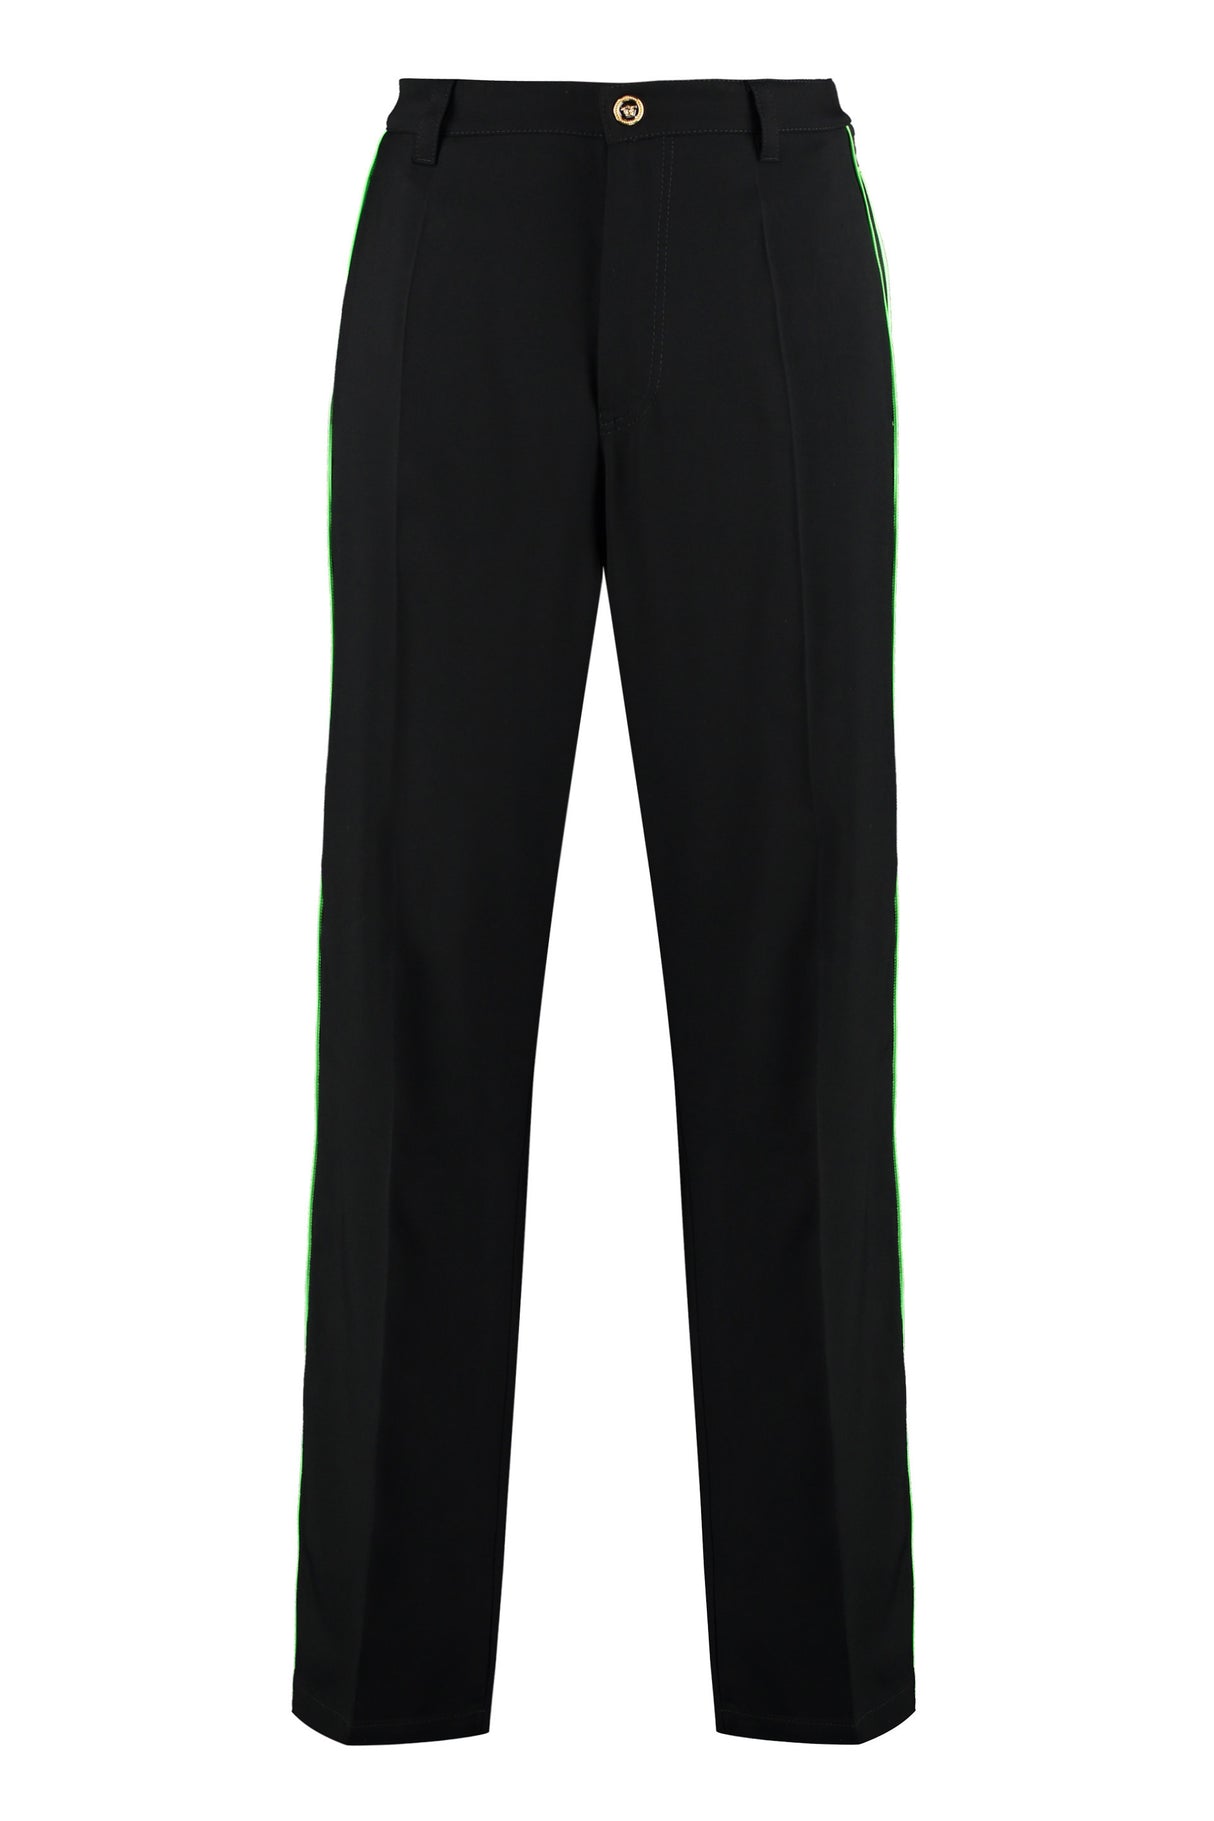 Men's Black Track Pants with Versace Logoed Side Stripes & Welt Pockets